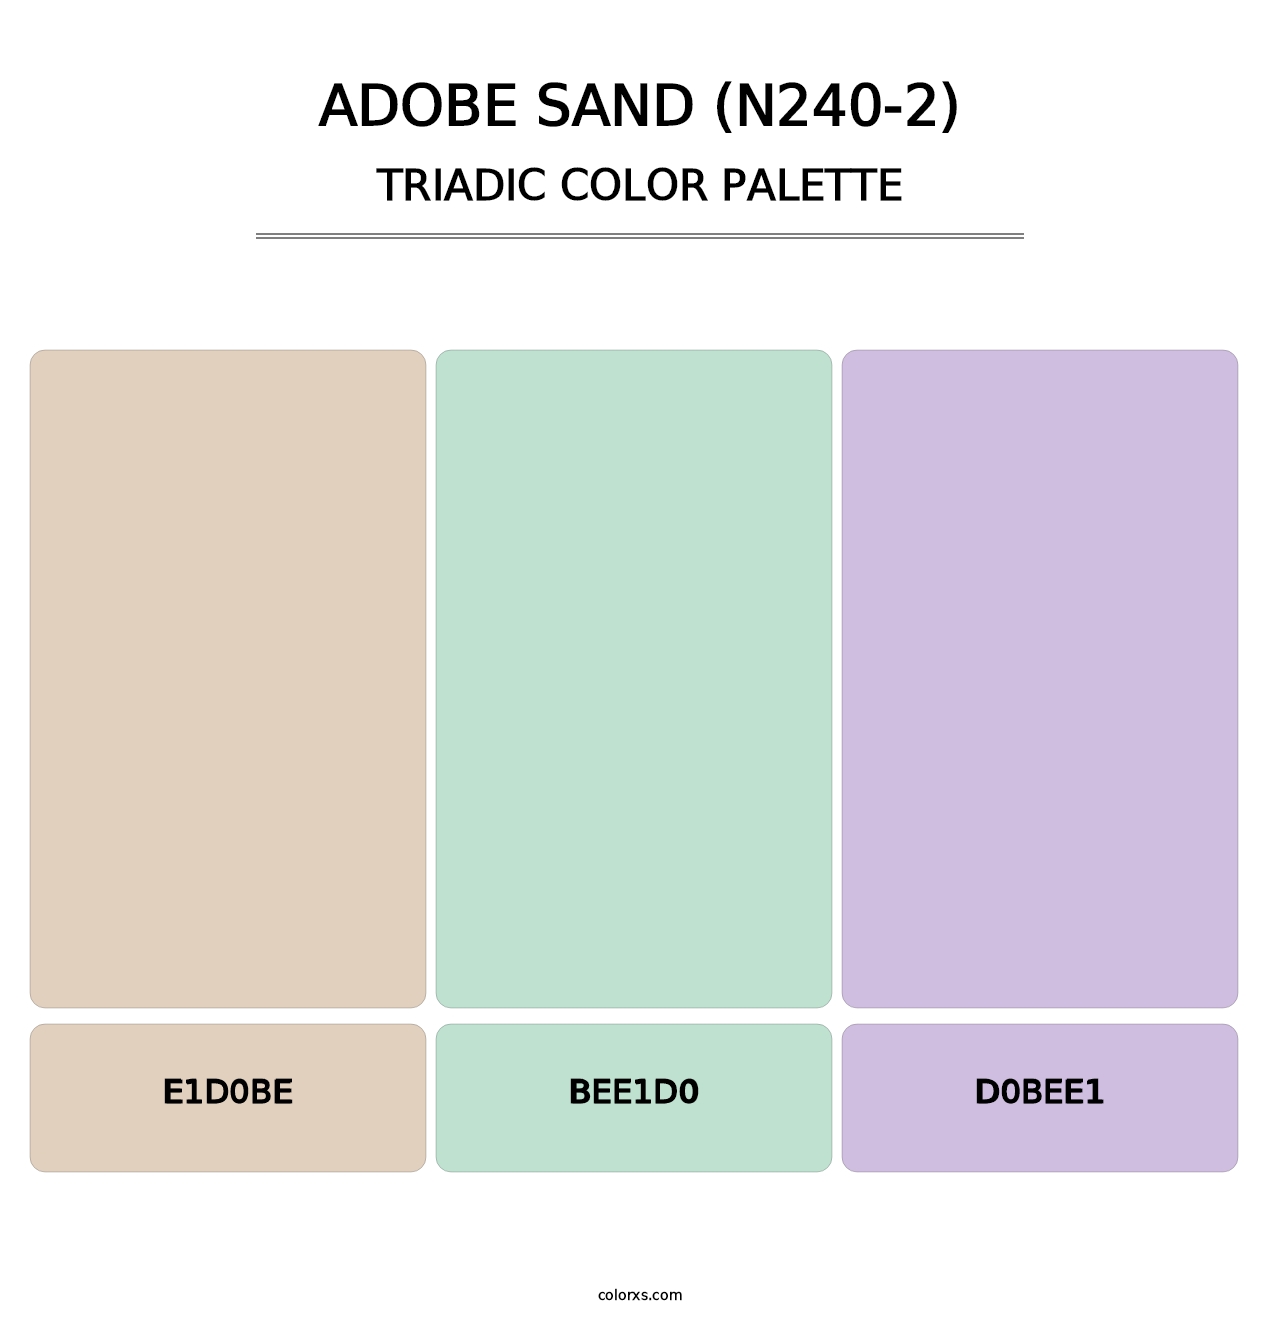 Adobe Sand (N240-2) - Triadic Color Palette